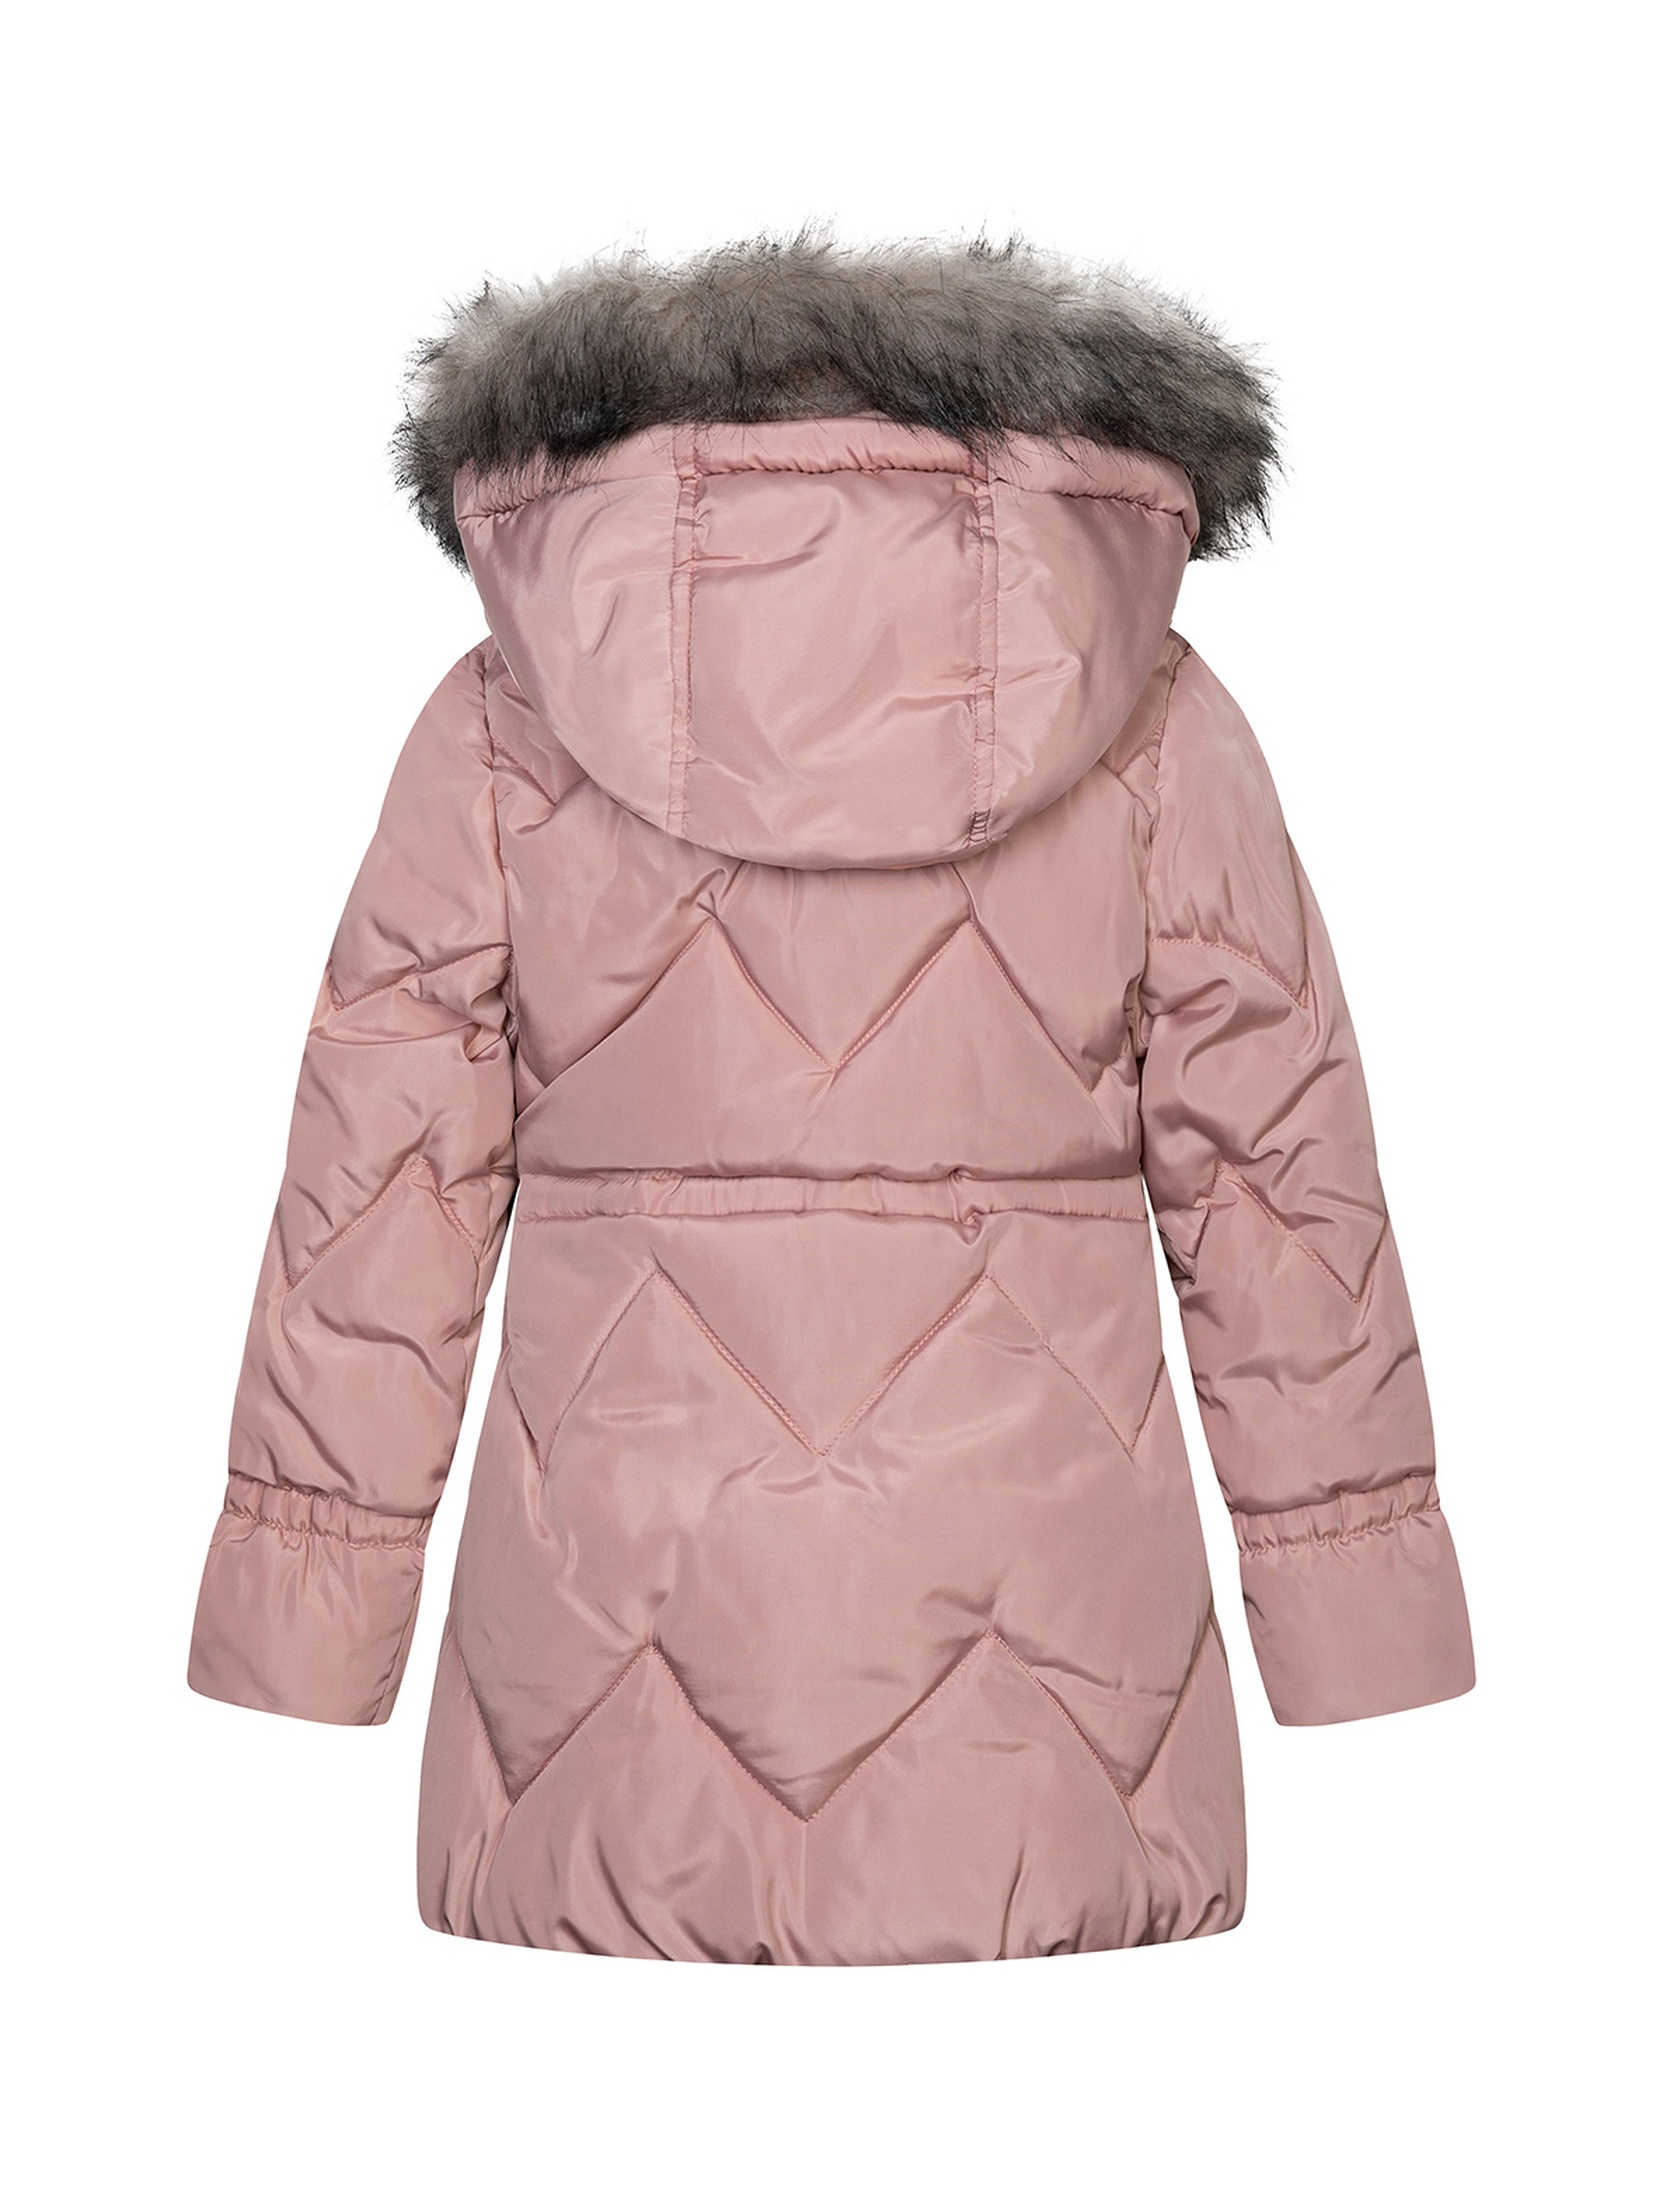 Płaszcz zimowy niemowlęcy różowy z futrzanym kapturem